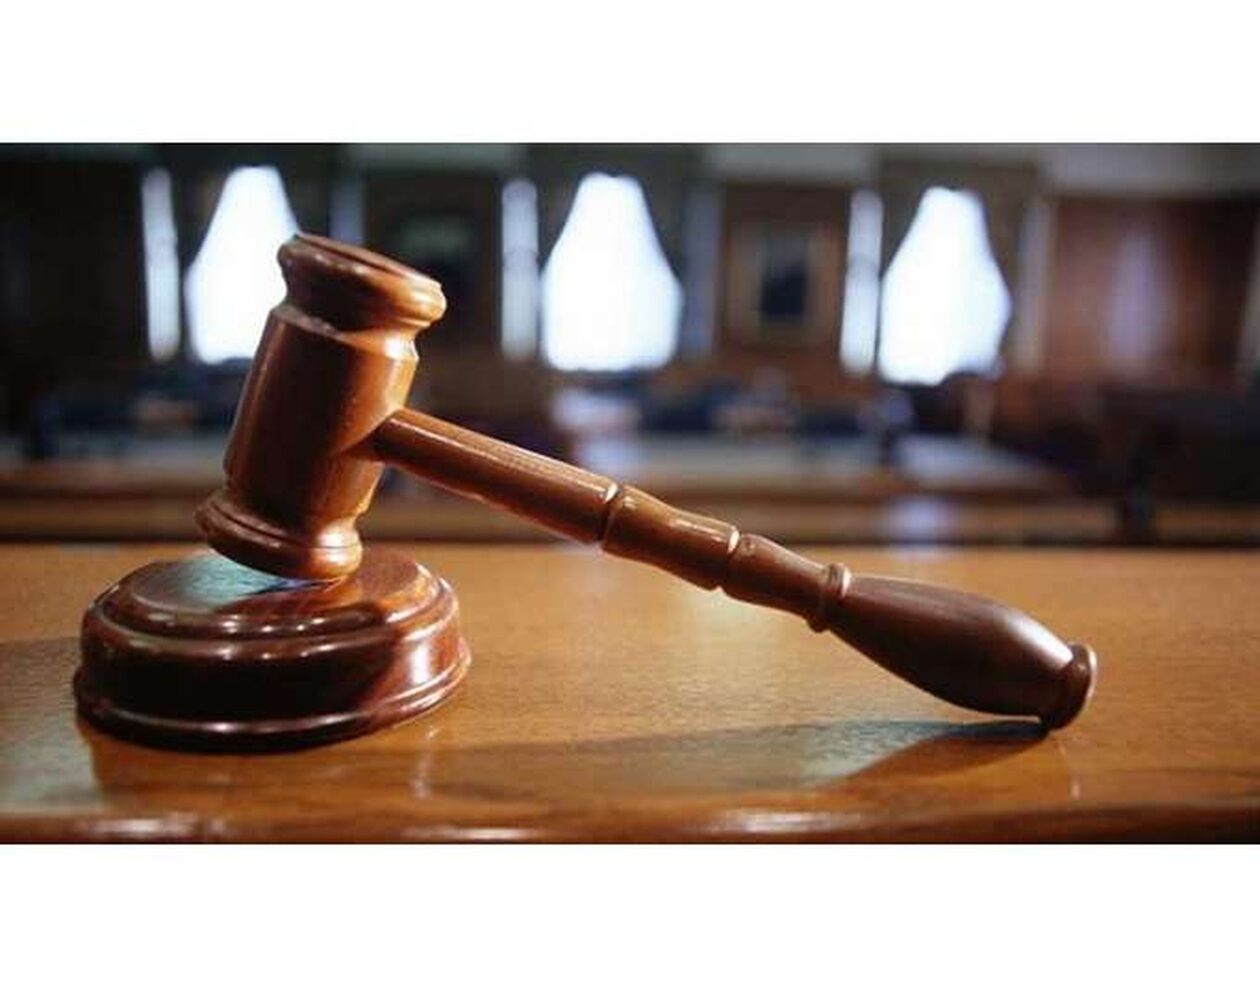 Πρόεδρος Δικαστών και Εισαγγελέων για Πολάκη: Σοκαριστική ανάρτηση - Συνιστά συνταγματική επιτροπή